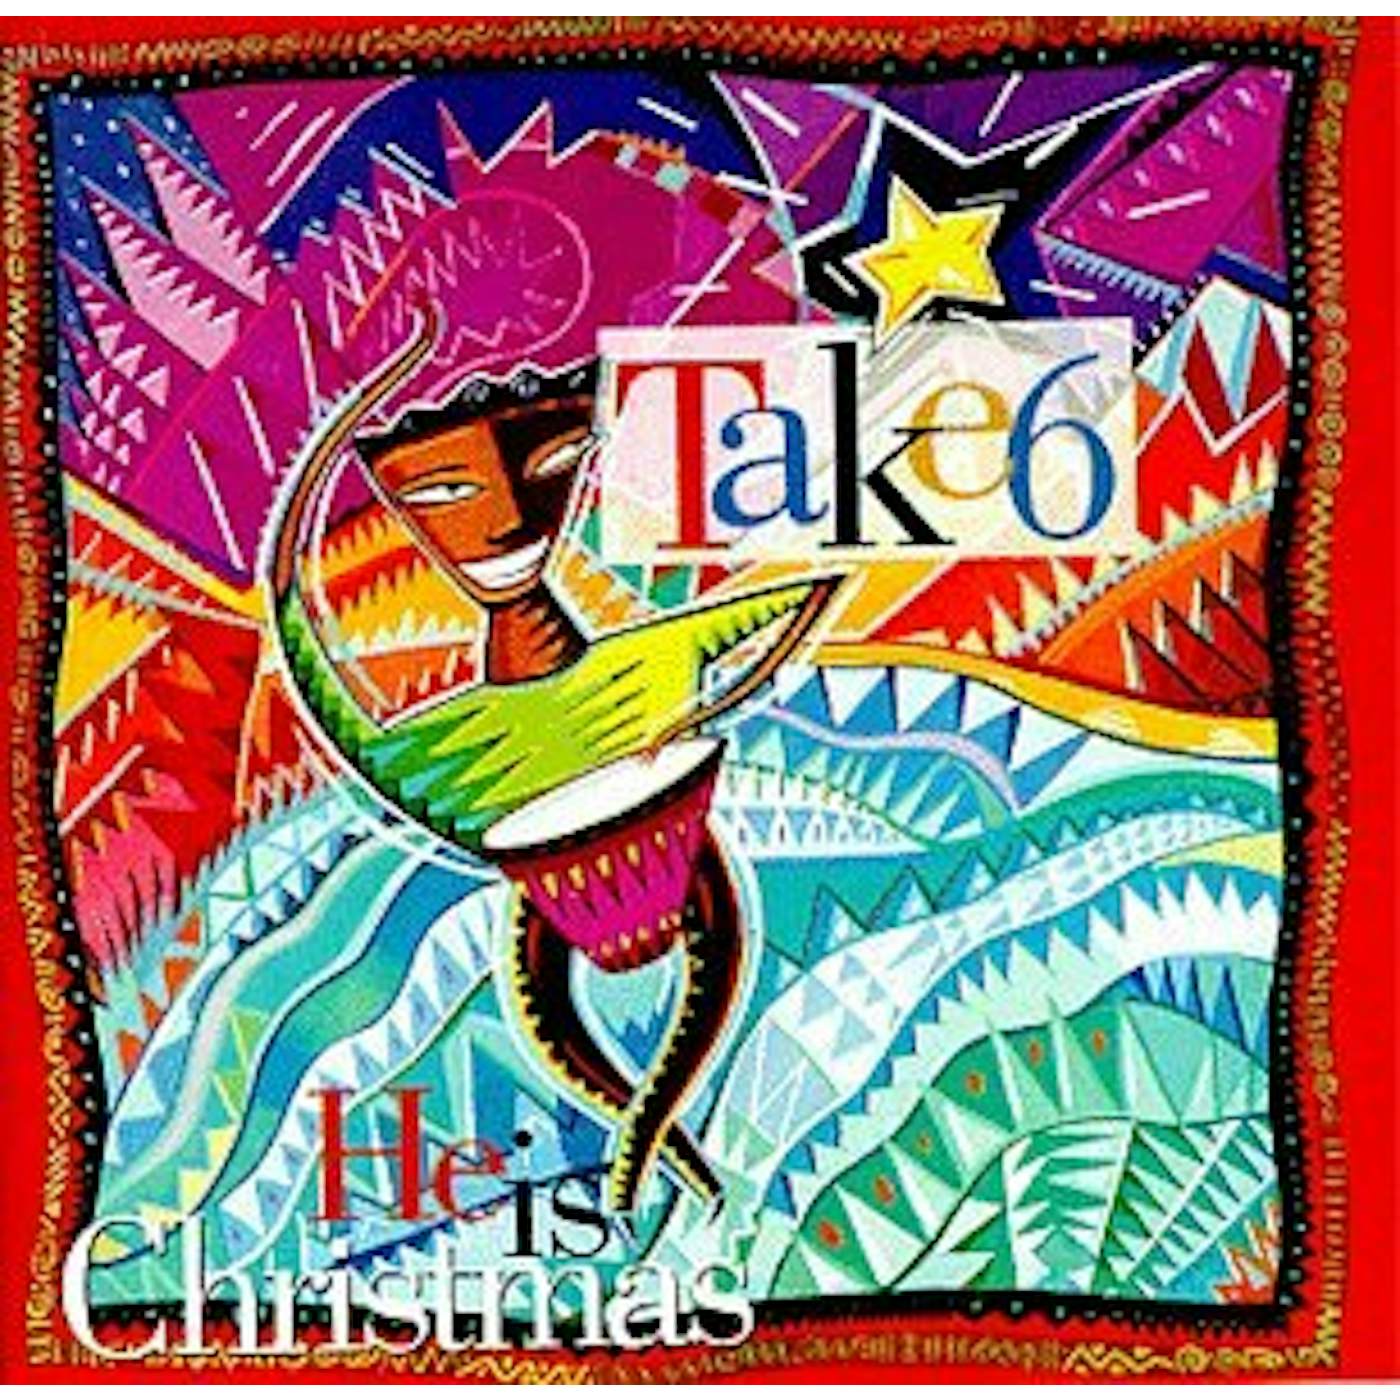 Take 6 HE IS CHRISTMAS CD